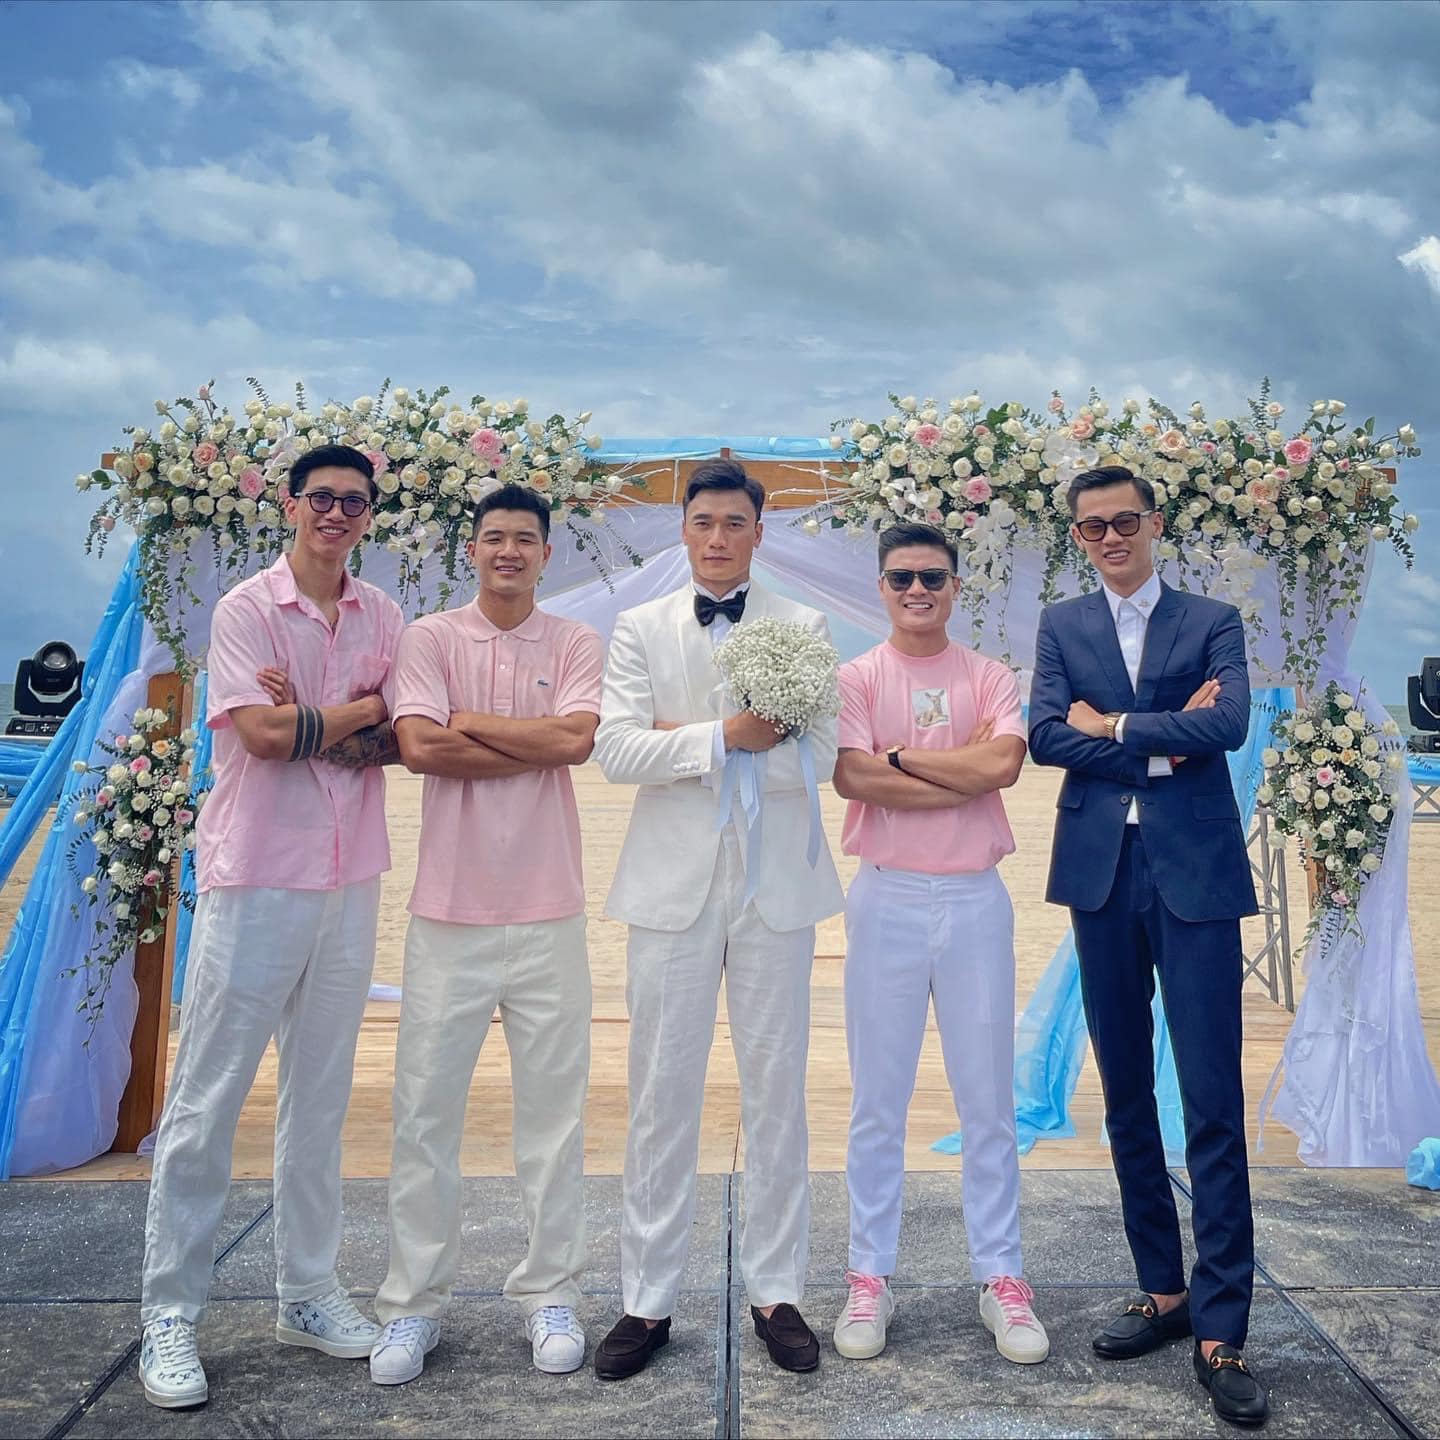 HOT: Thủ môn Bùi Tiến Dũng tổ chức đám cưới với bạn gái Tây, dàn tuyển thủ Việt Nam đều góp mặt chung vui - Ảnh 4